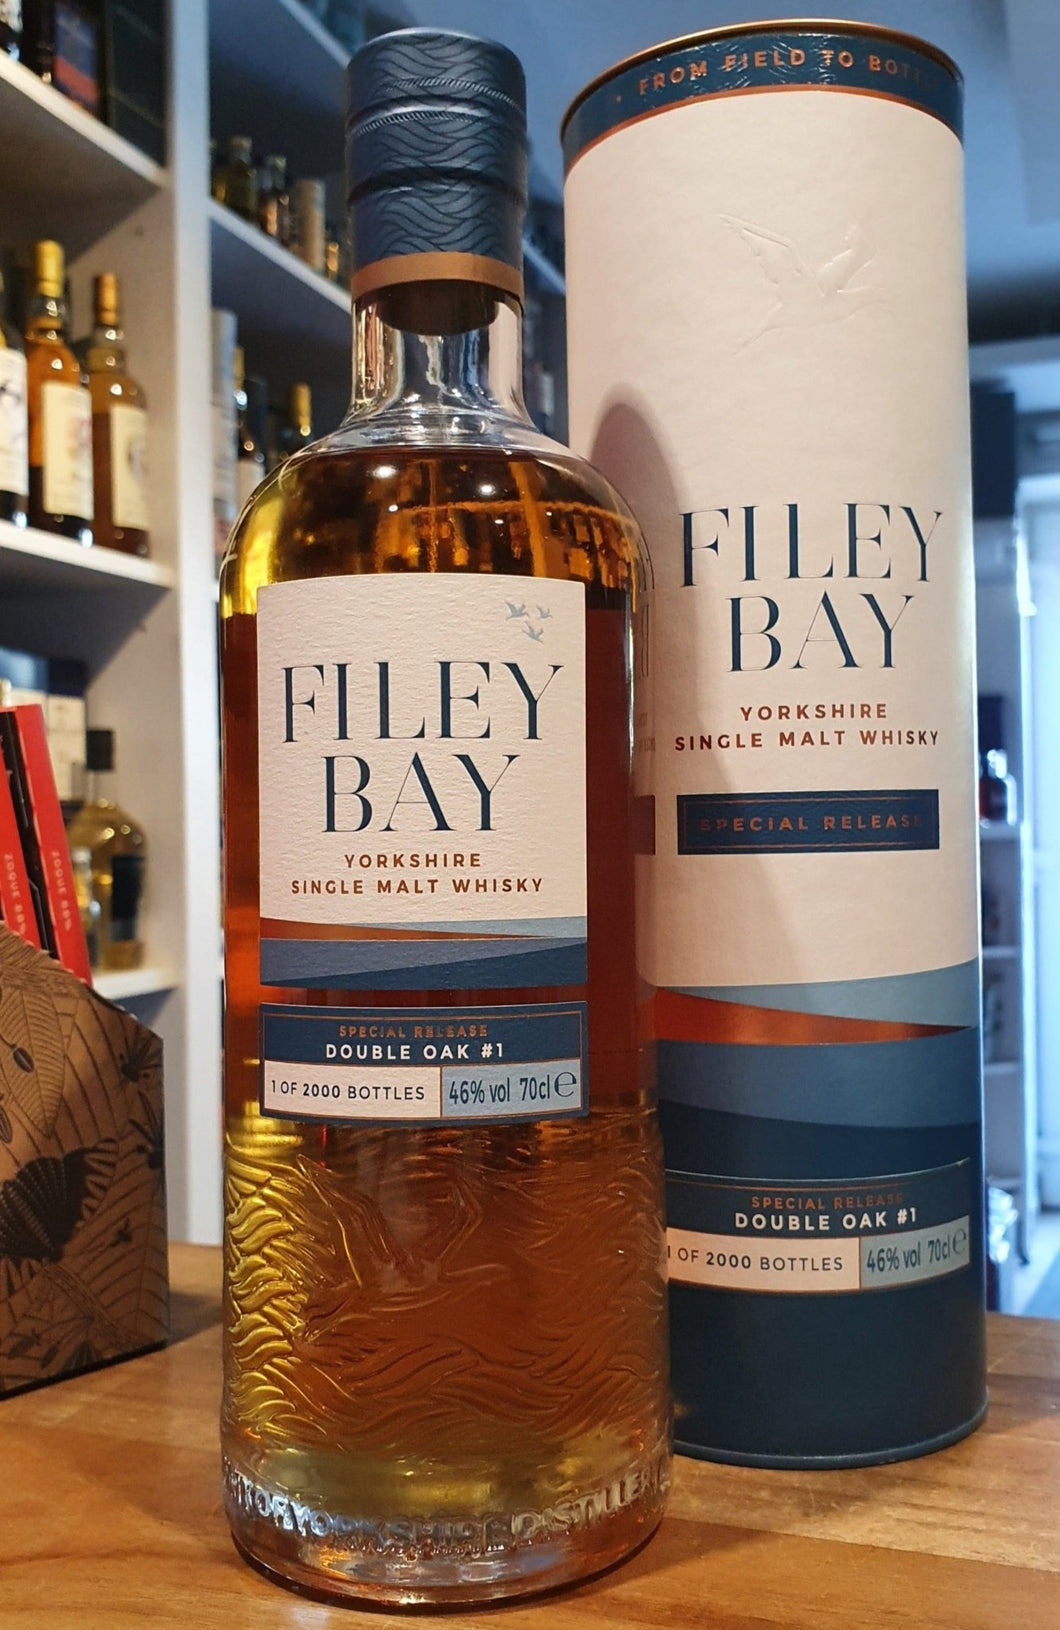 Filey Bay double oak batch 1 Yorkshire Whisky single malt 0,7l 46 % vol. 5y first fill american bourbon,  9m virgin oak  limitiert auf 480 fl in D von 2000fl    Gaumen: fruchtig und würzig , Sahnesoda, Bananenbrot, Ananasbonbons gerösteter Eiche.  Vanille- und Toffee-Aromen in schöner Harmonie  Ein special Release von Spirits of Yorkshire: Ein unverwechselbarer und ungewöhnlicher Single Malt, Reifung Single Malt Whiskys in Ex-Bourbon- Eichenfässern 